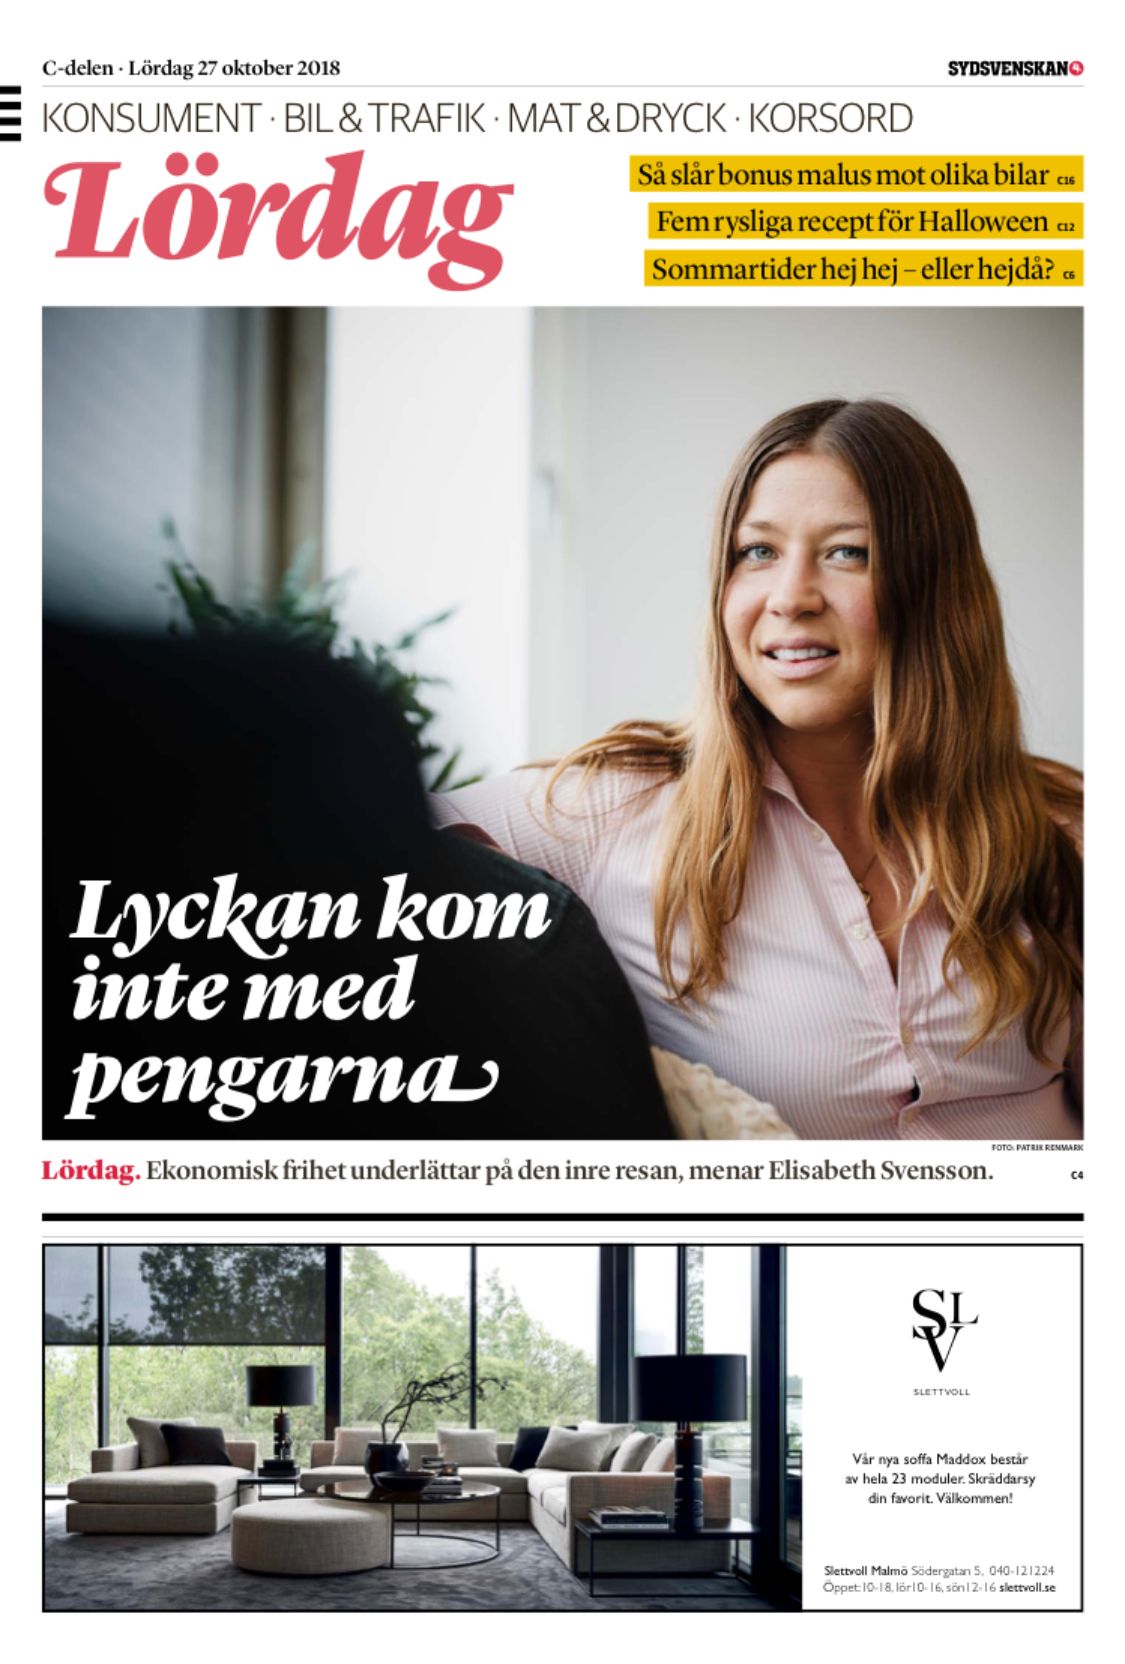 Sydsvenskan-förstasidan-@RikaKvinnor.se